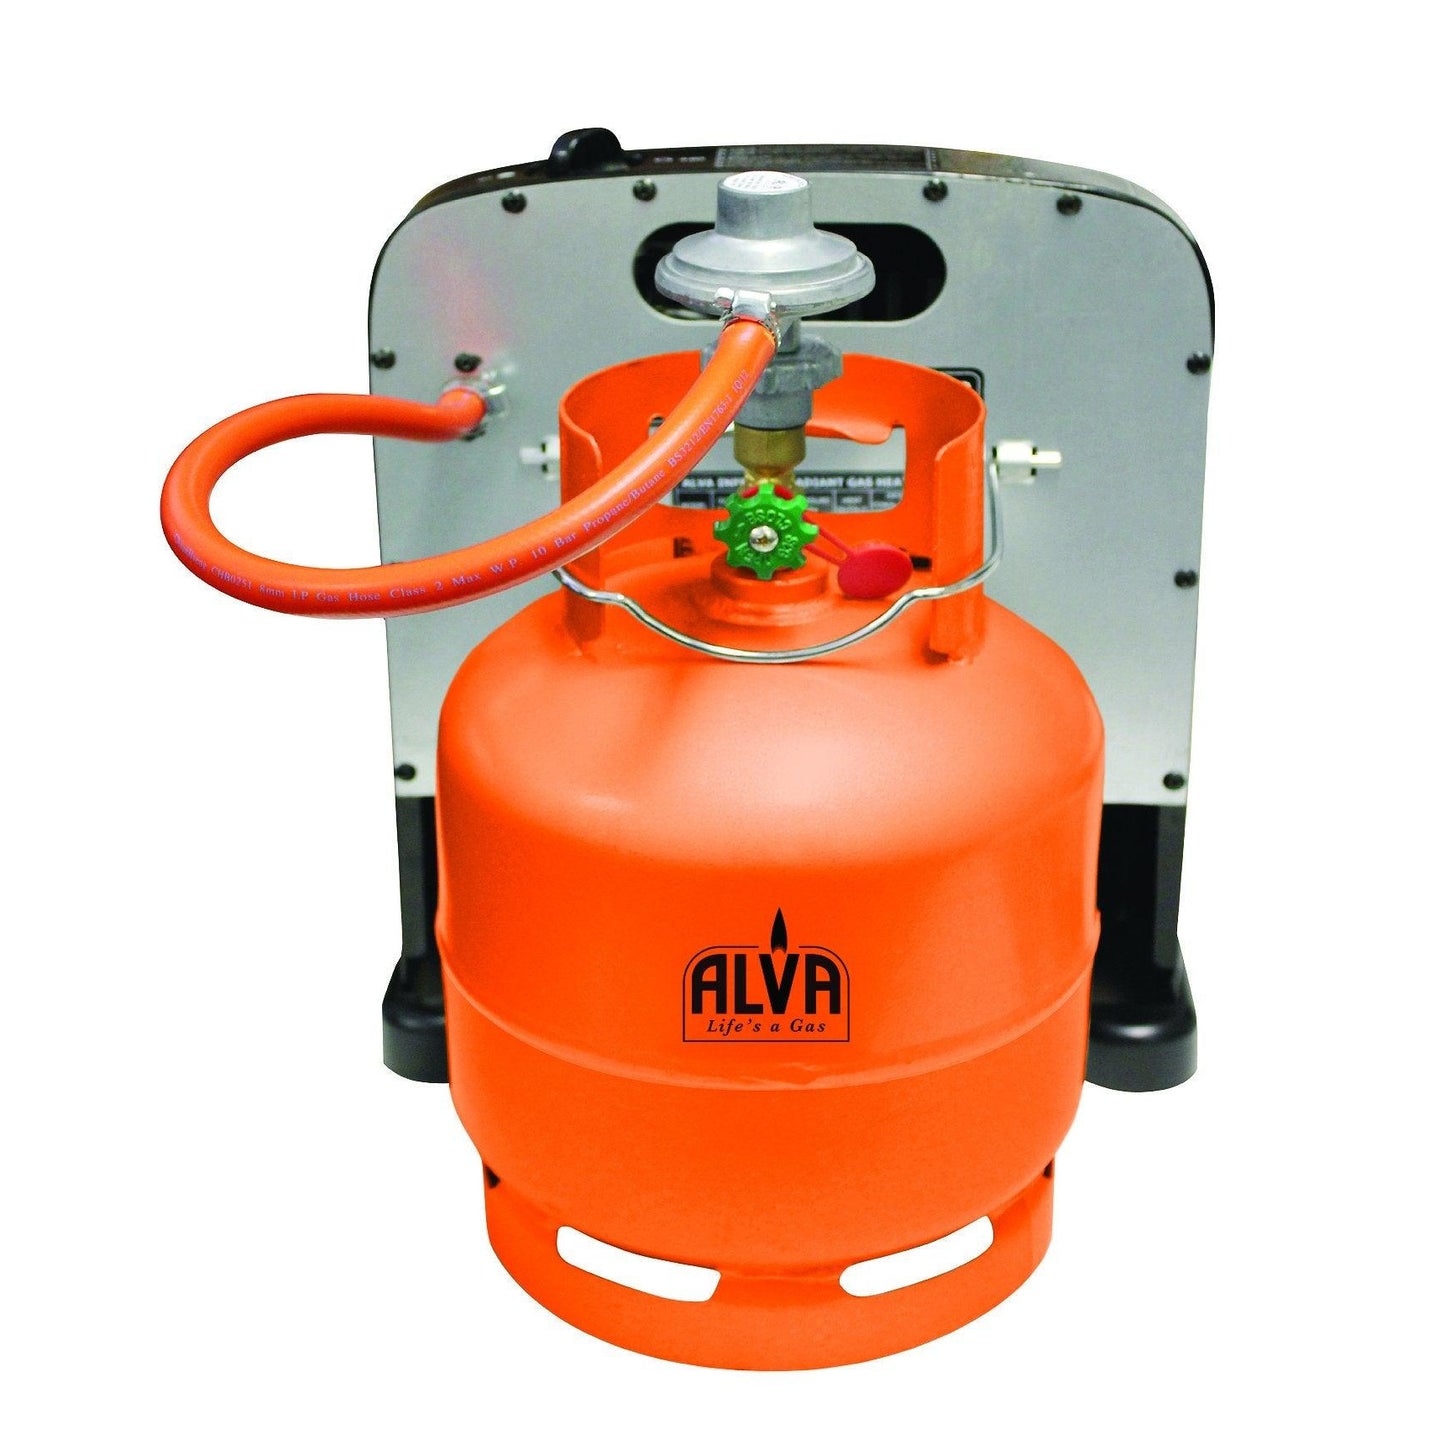 3KG GAS CYLINDER (EMPTY) - Alva Lifestyle Retail